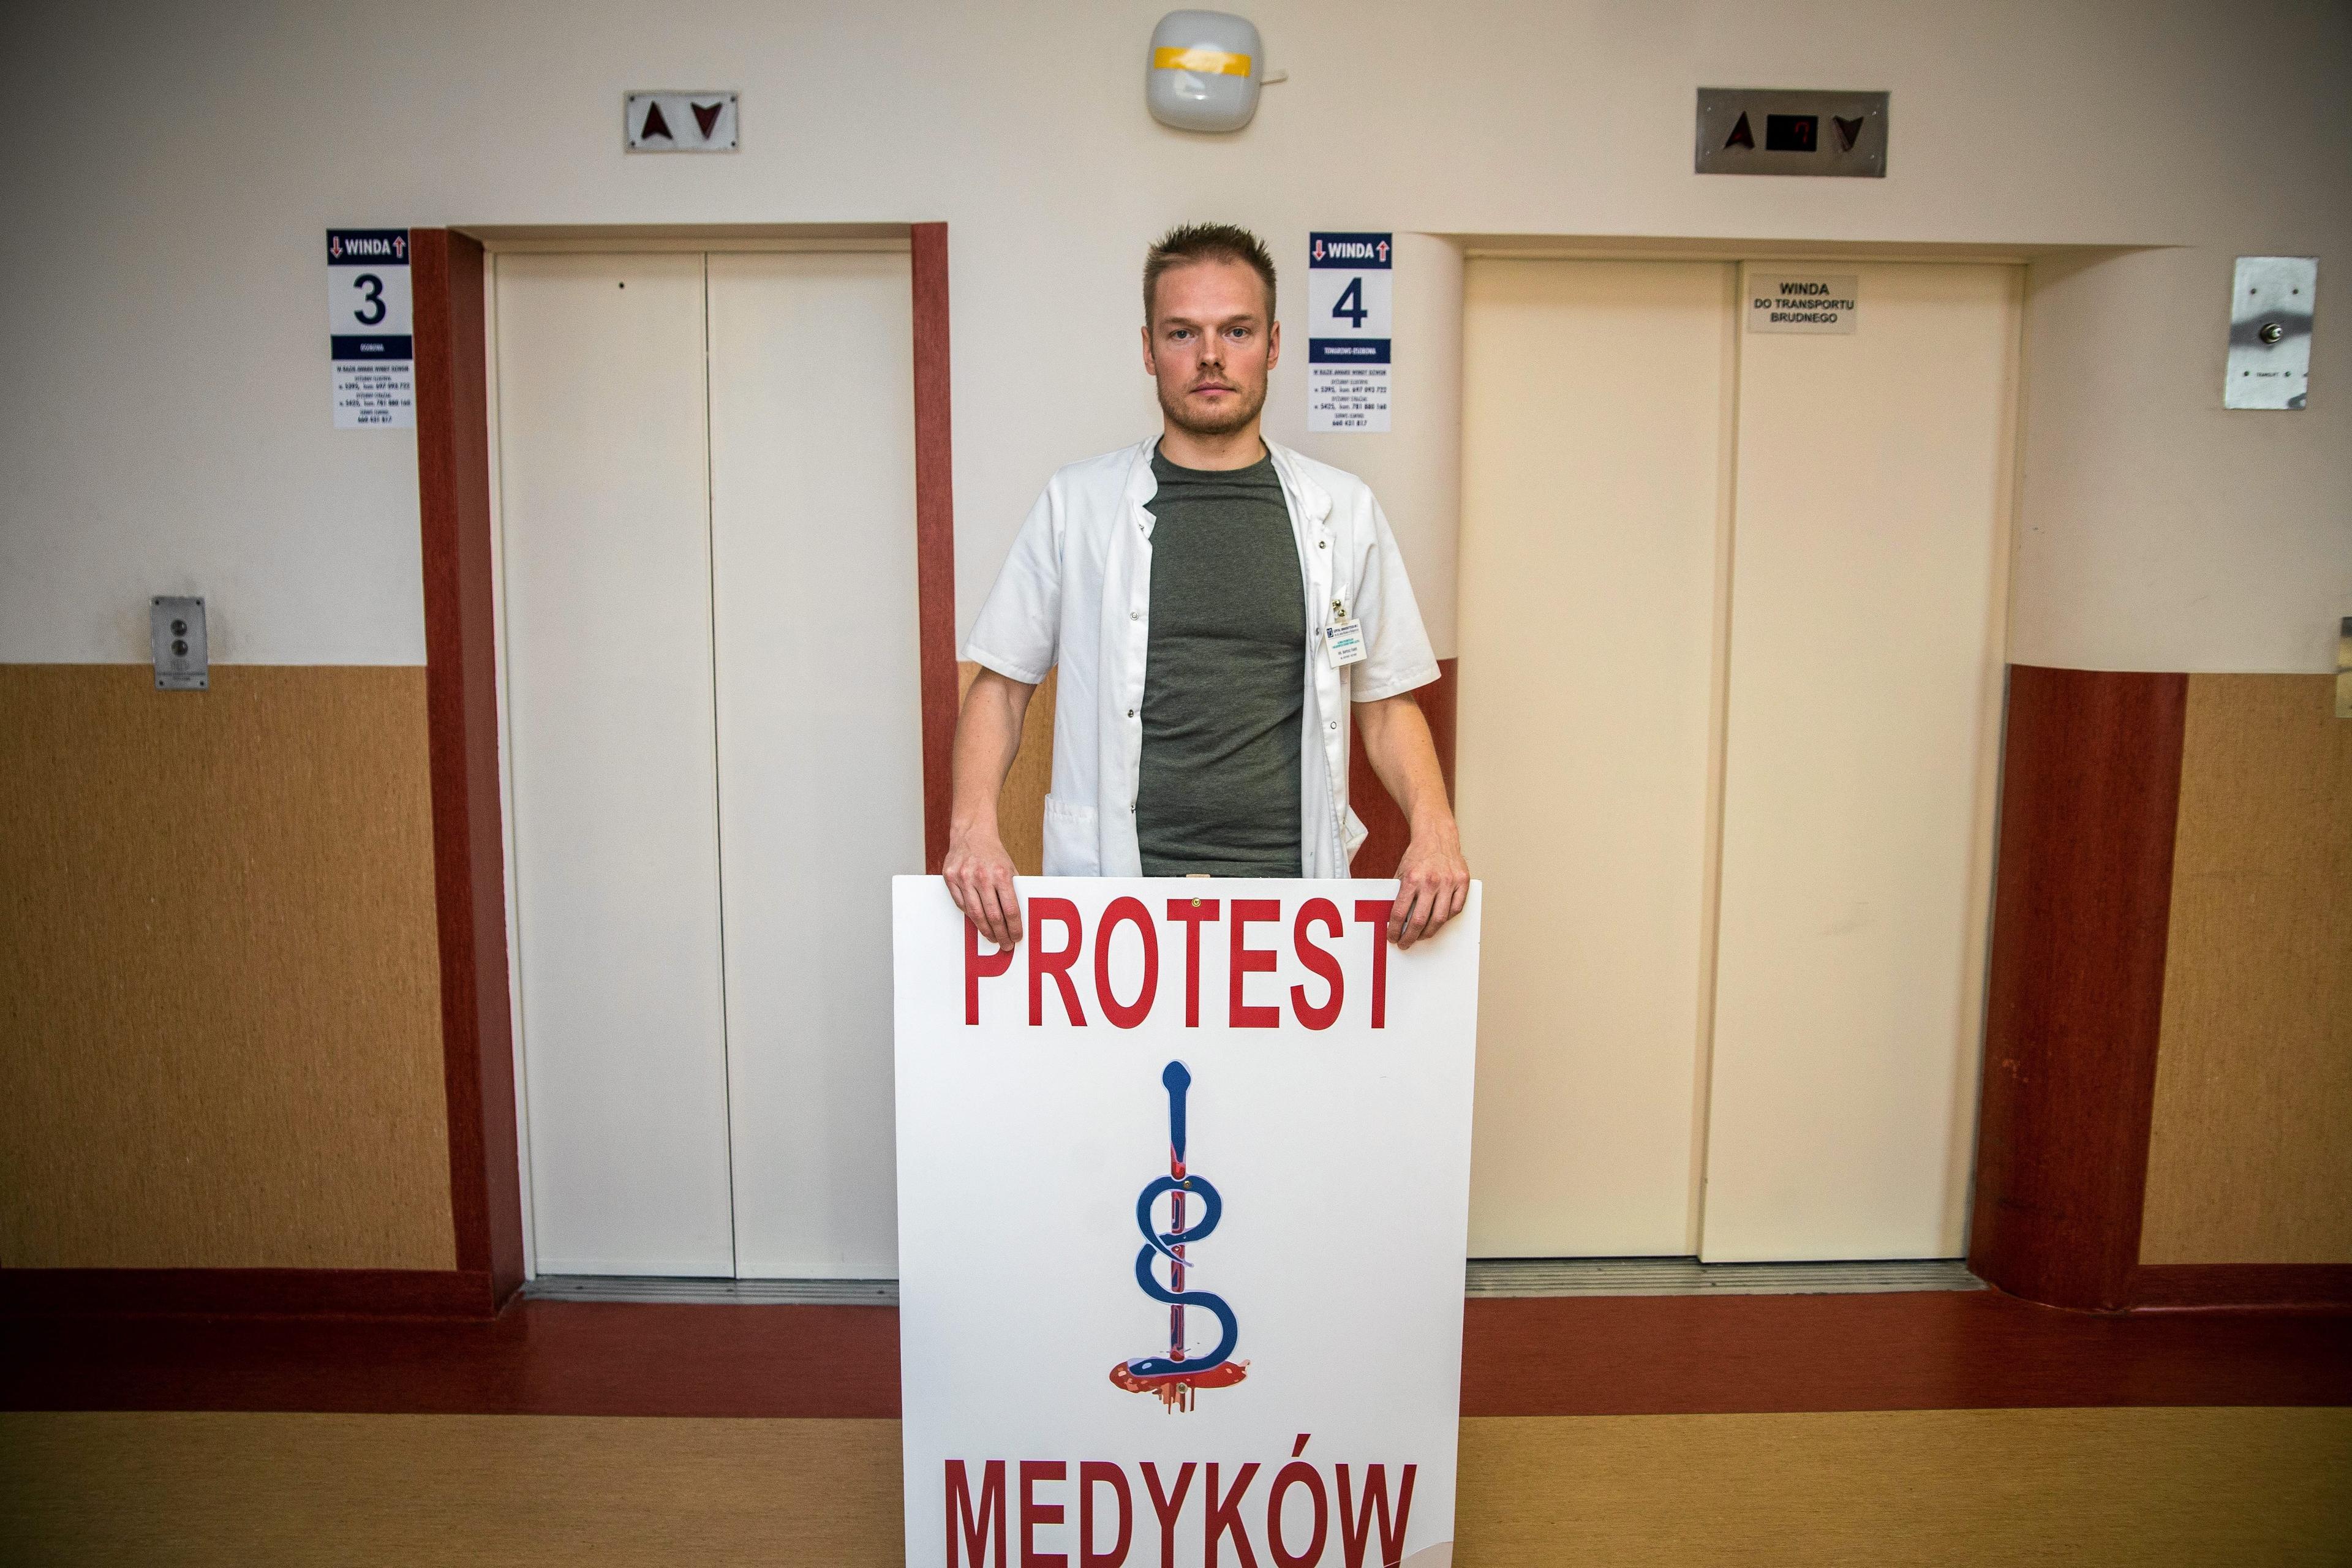 19.10.2017 Bydgoszcz , Szpital Biziela . Protest medykow . Bartosz Fialek . 
Fot. Grazyna Marks / Agencja Gazeta